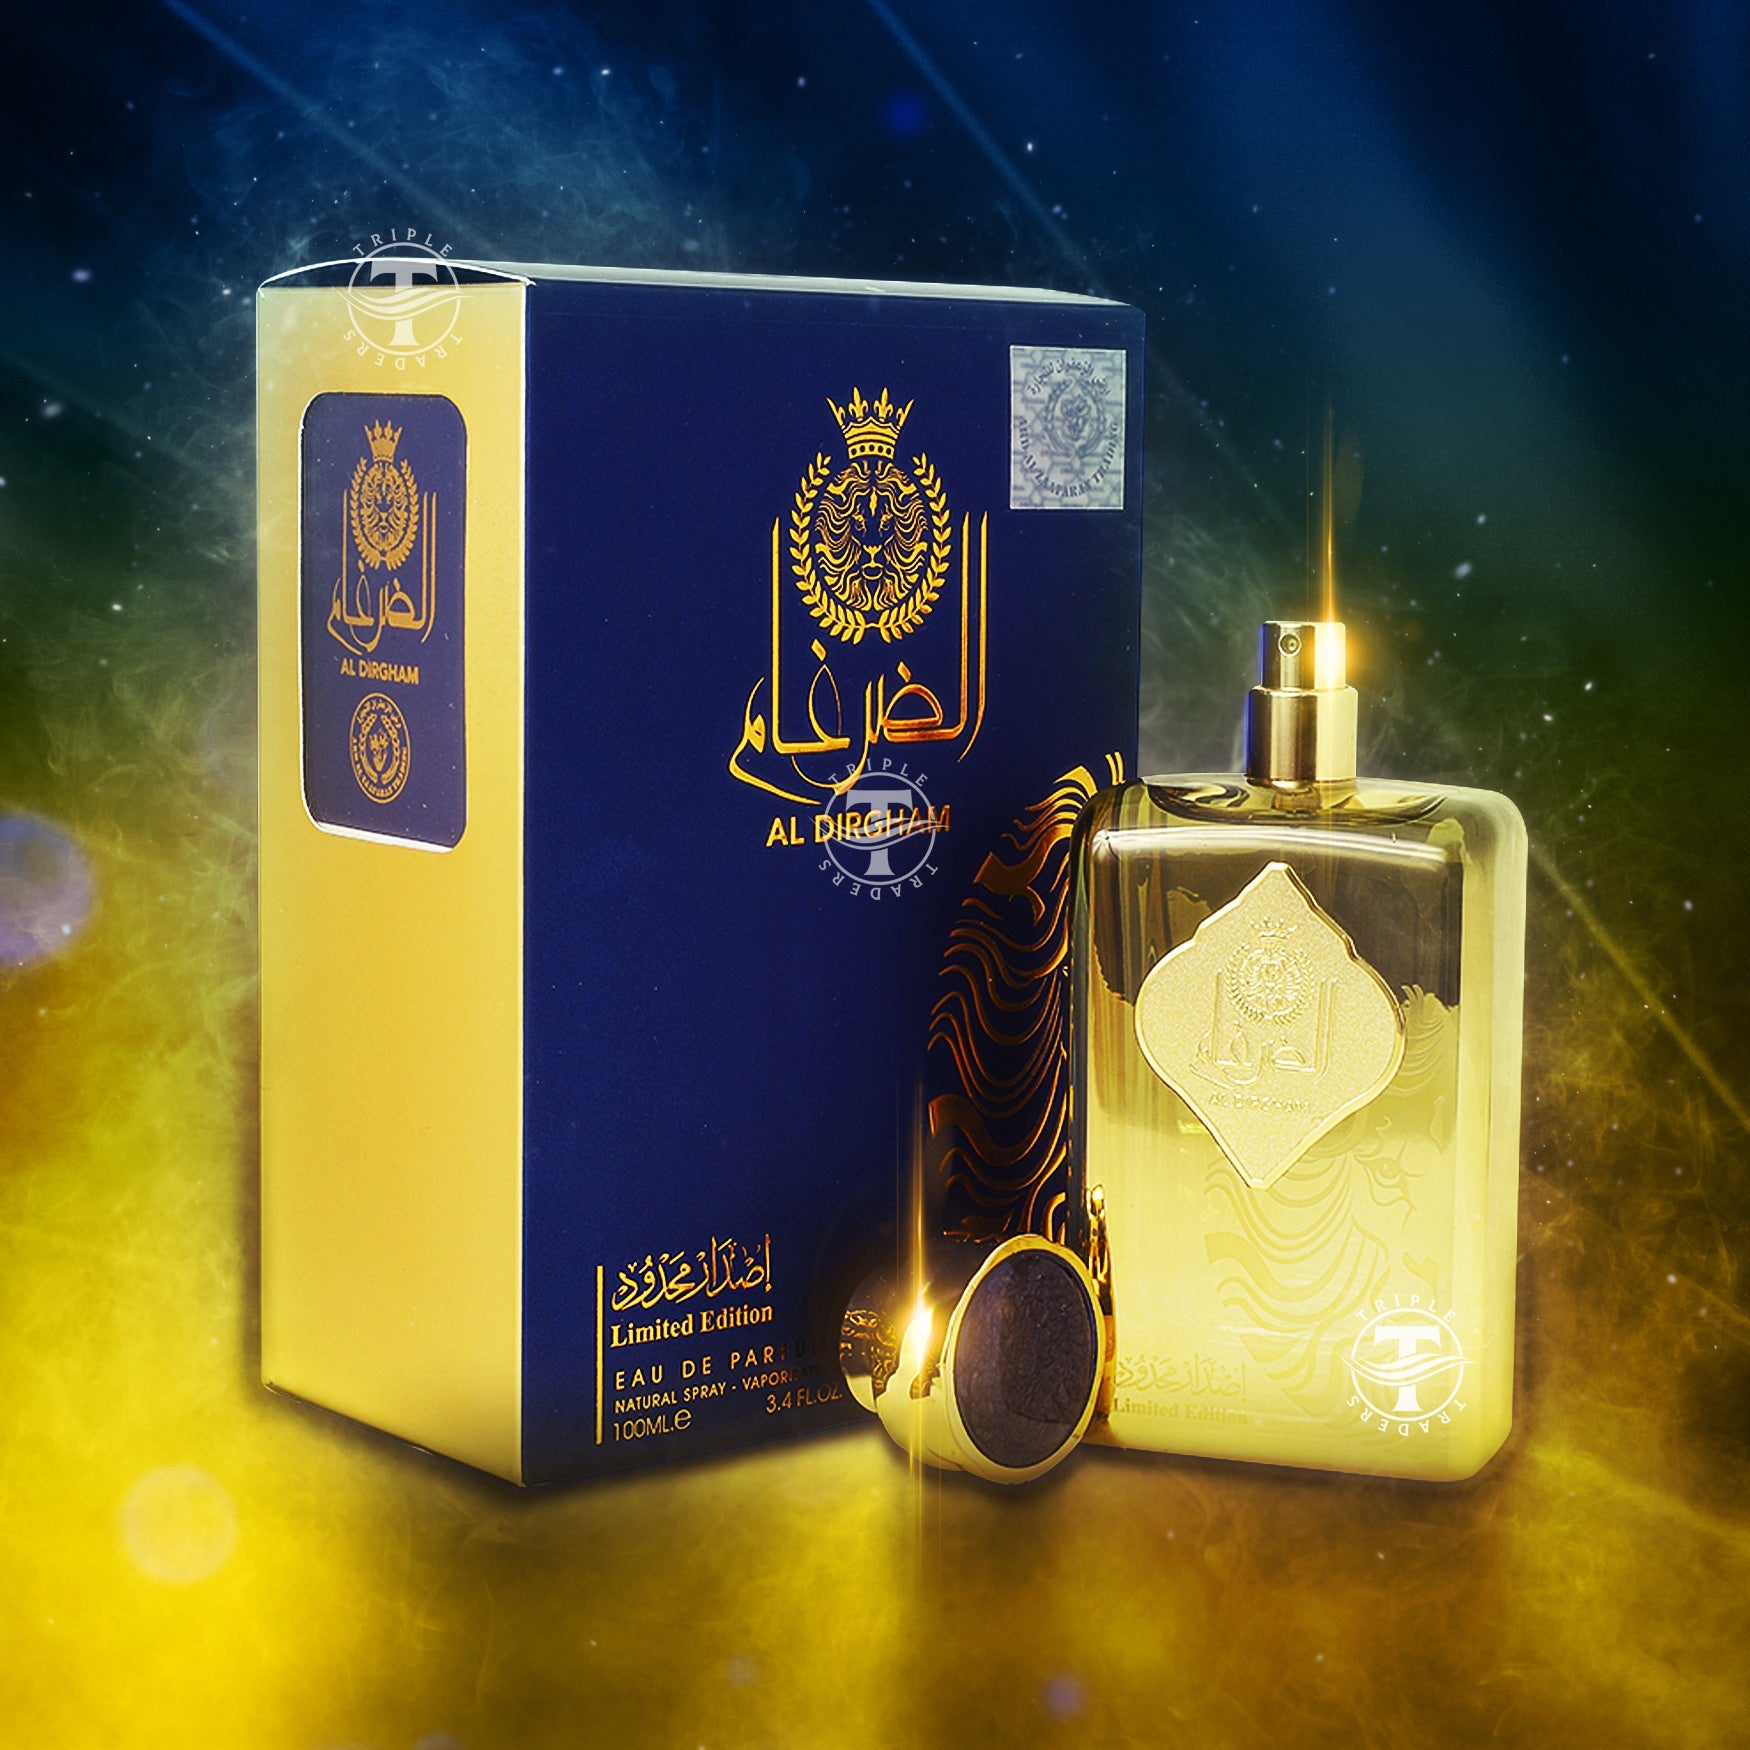 Grise Eau De Parfum by Maison Alhambra 100ml 3.4 Fl Oz Oriental